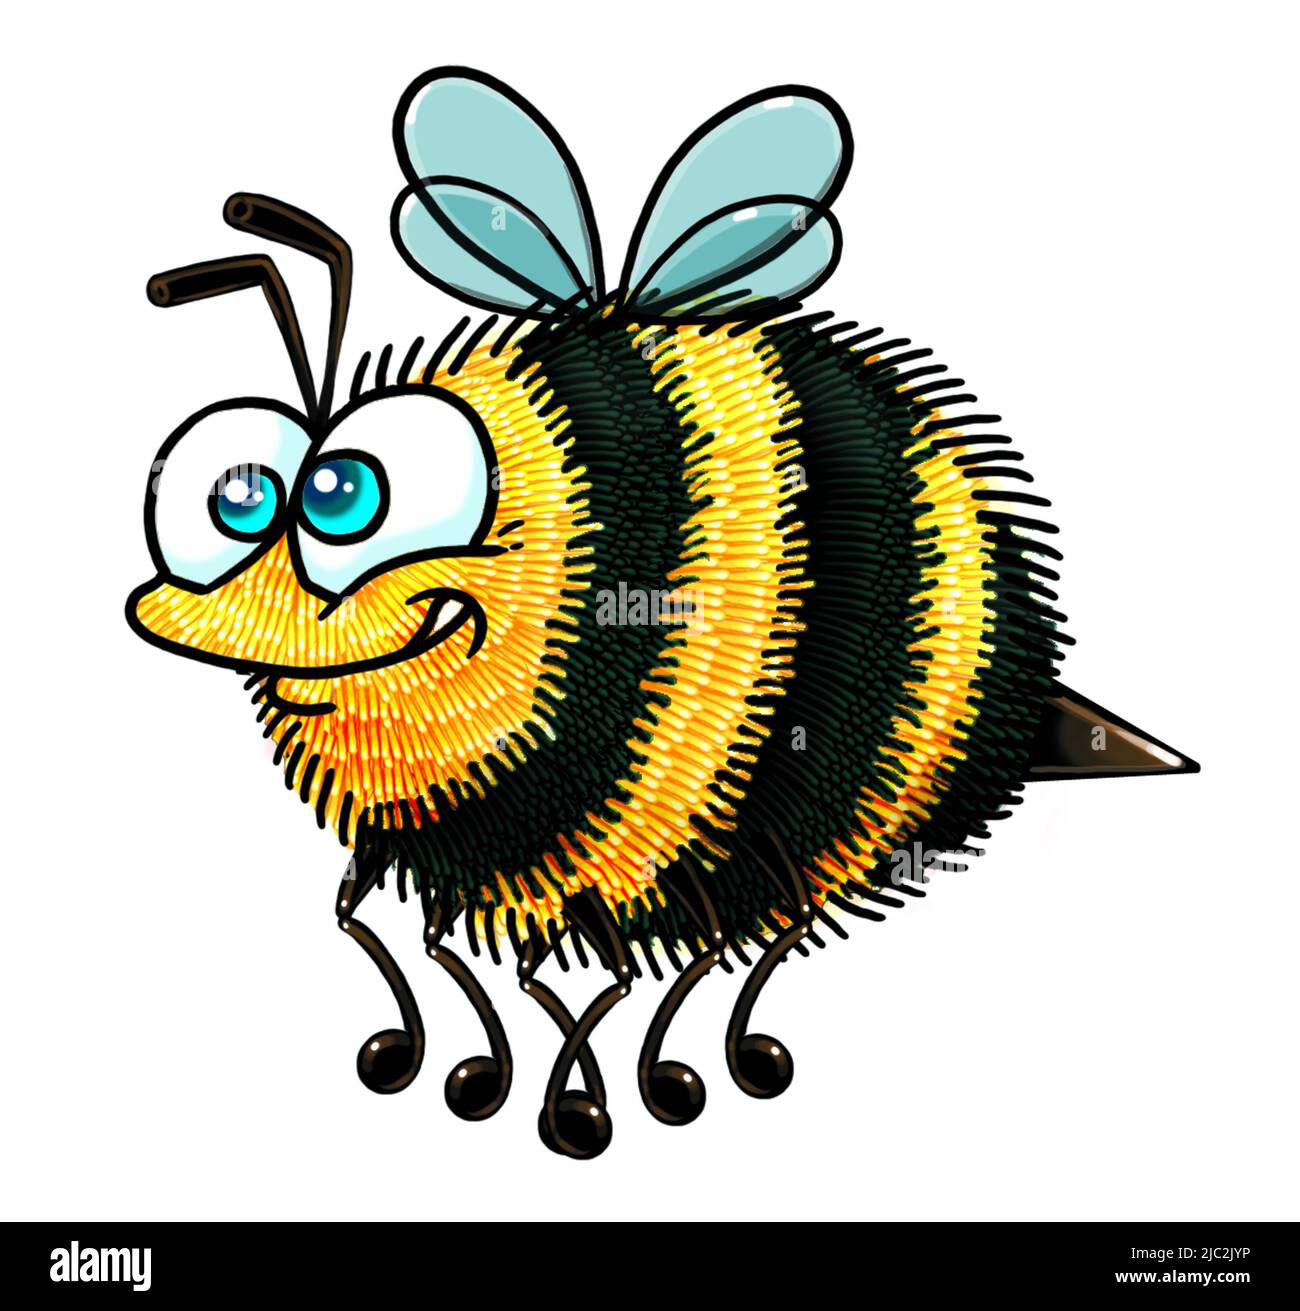 Arte de dibujos animados de un lindo abejorro abeja abeja en vuelo de los niños, ilustración educativa, tarjeta de felicitación, traje powerpoint, sitio web, tarjeta de visita ocupada abeja Foto de stock